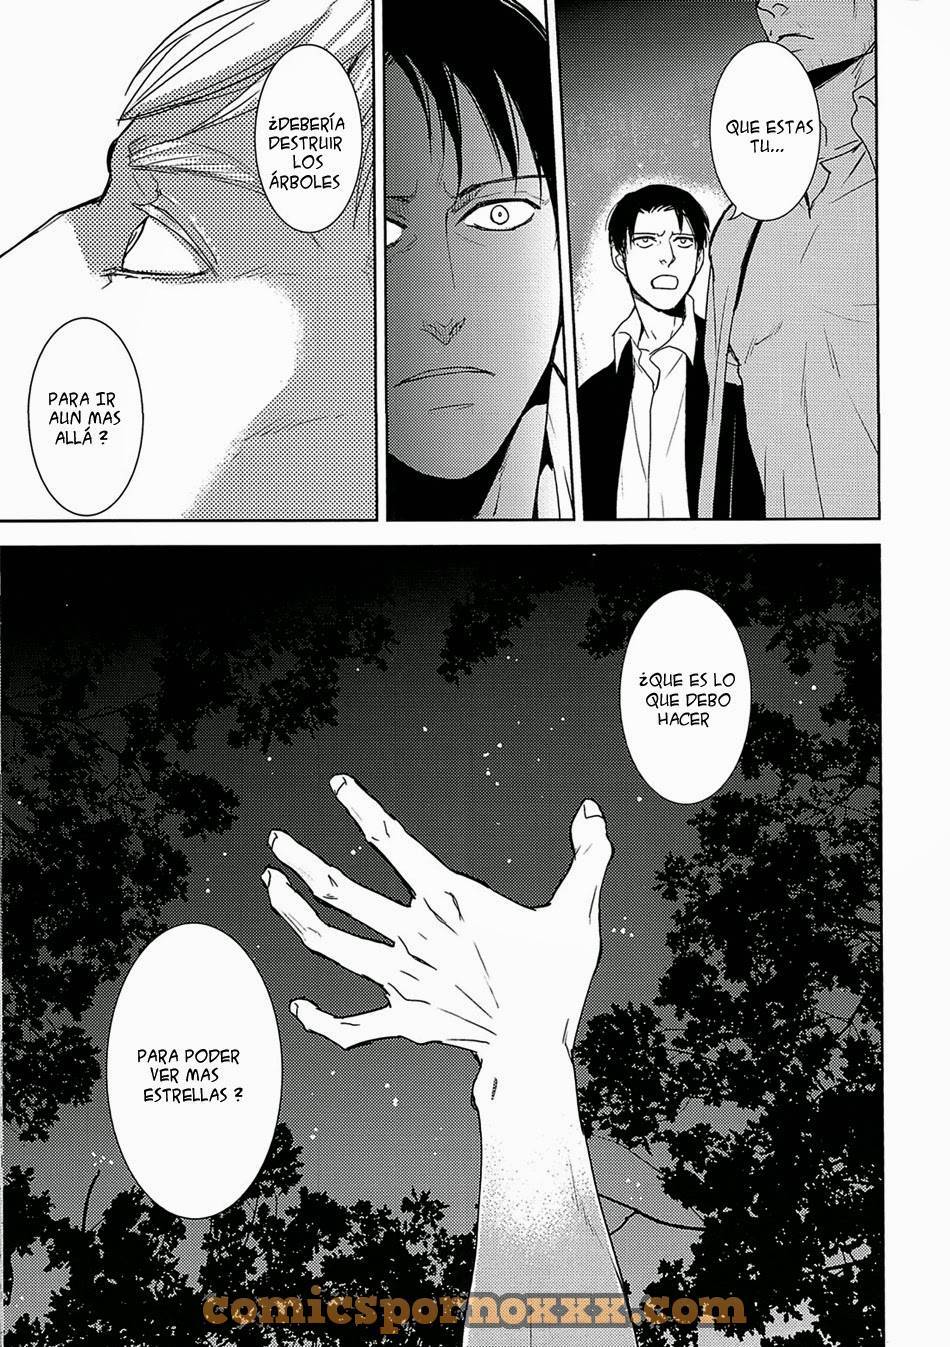 Attack on Titan Shingeki no Kyojin (Hand to Hug) - 11 - Comics Porno - Hentai Manga - Cartoon XXX